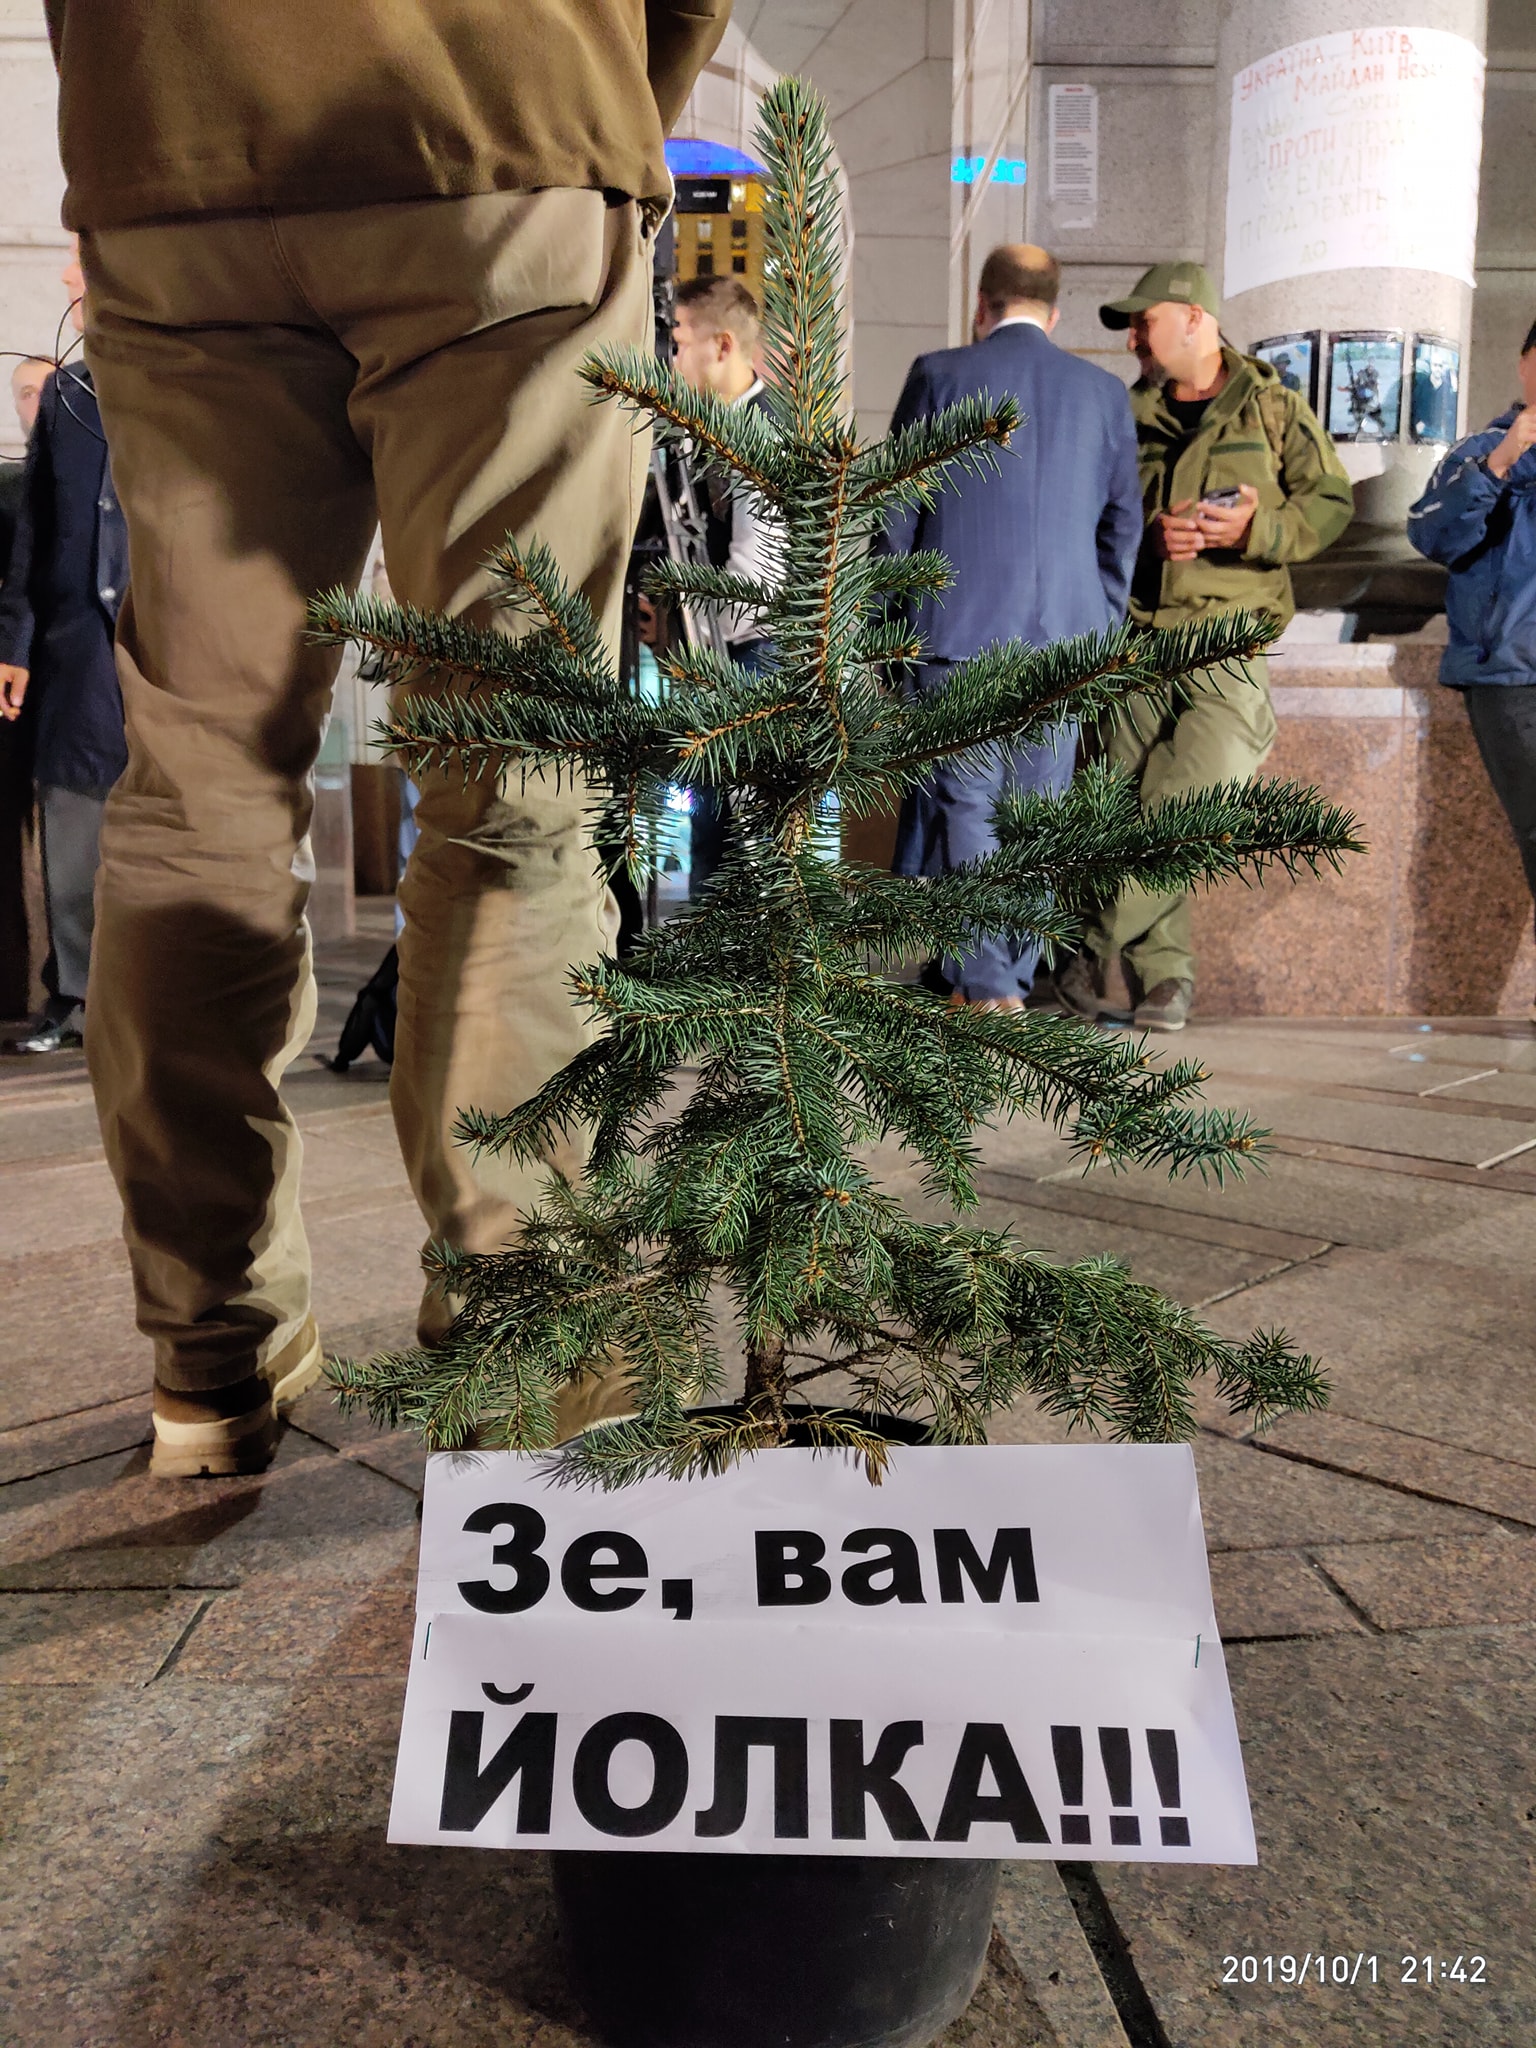 На Майдане собрались протестующие из-за решения Зеленского: фото